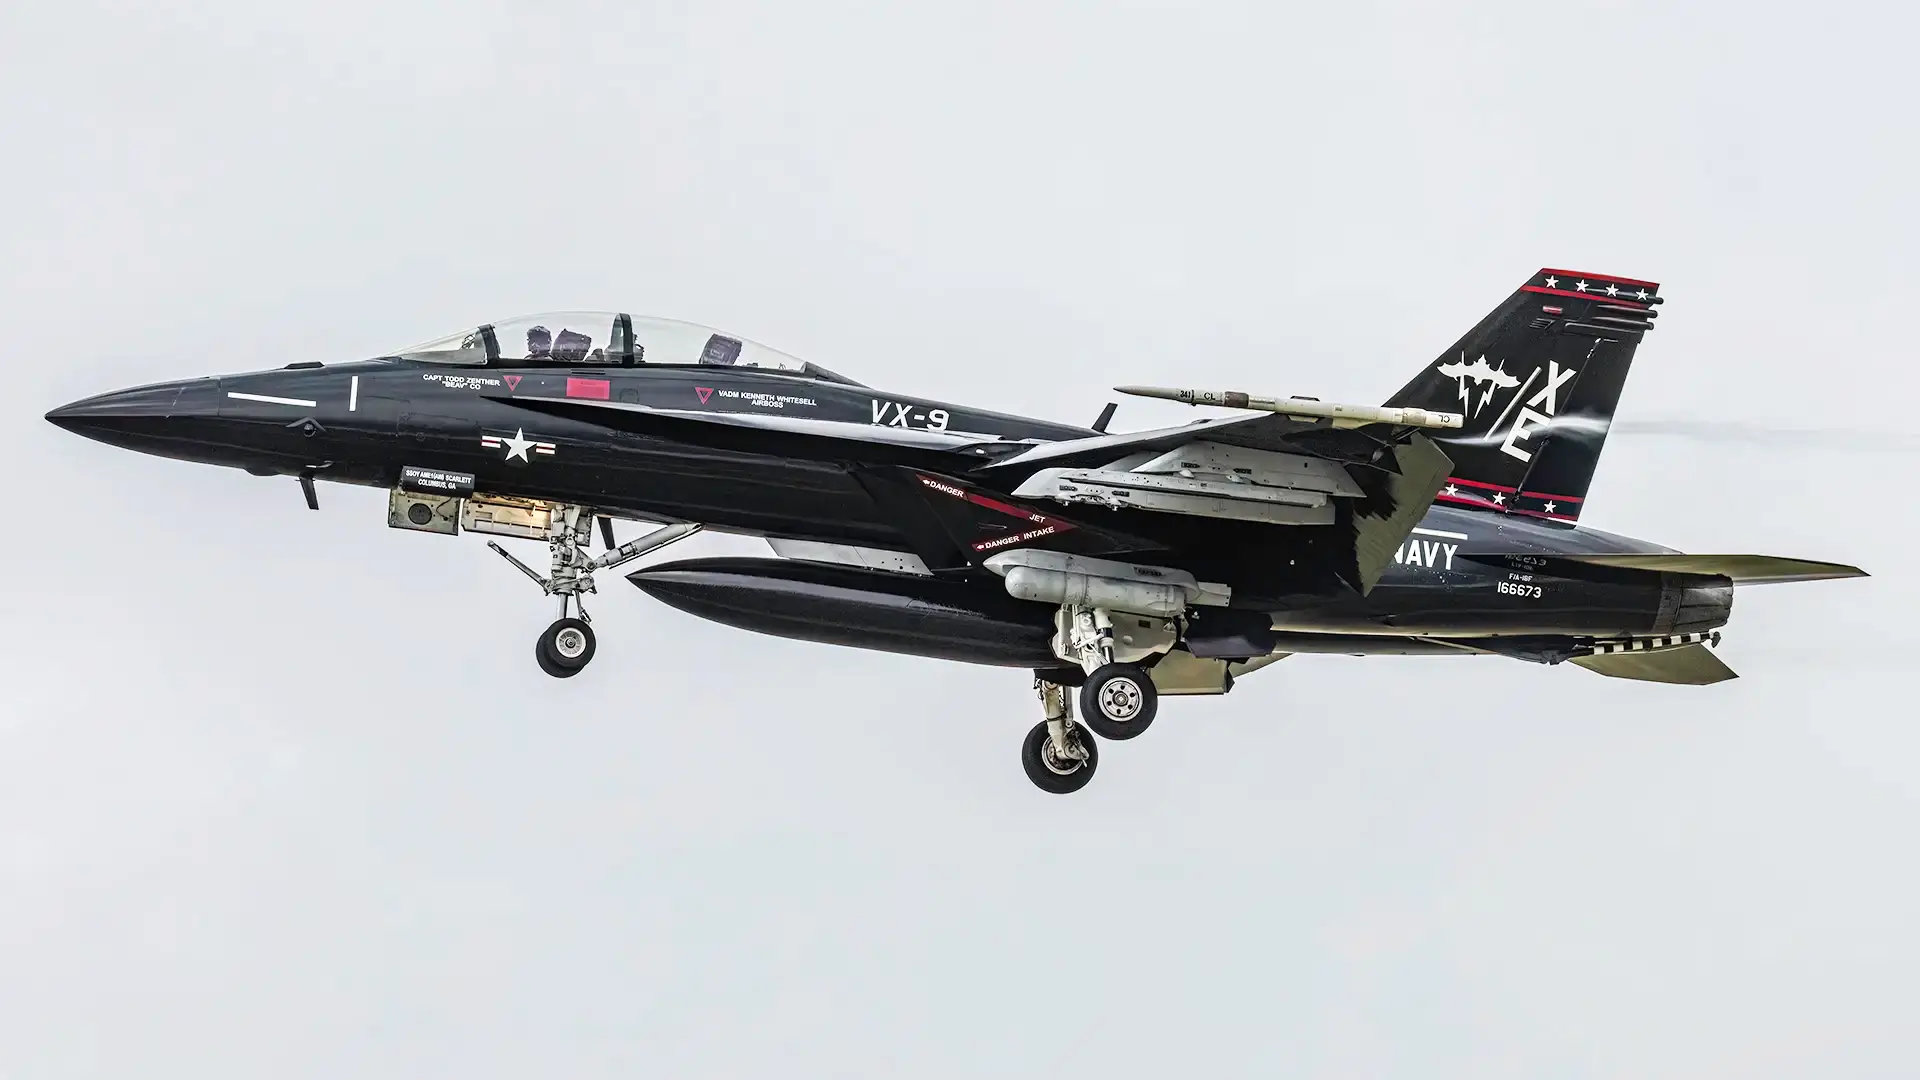 US Navy zeigt F/A-18 Super Hornet in Retro-Vandy-1-Tarnung, aber ohne Playboy-Häschen